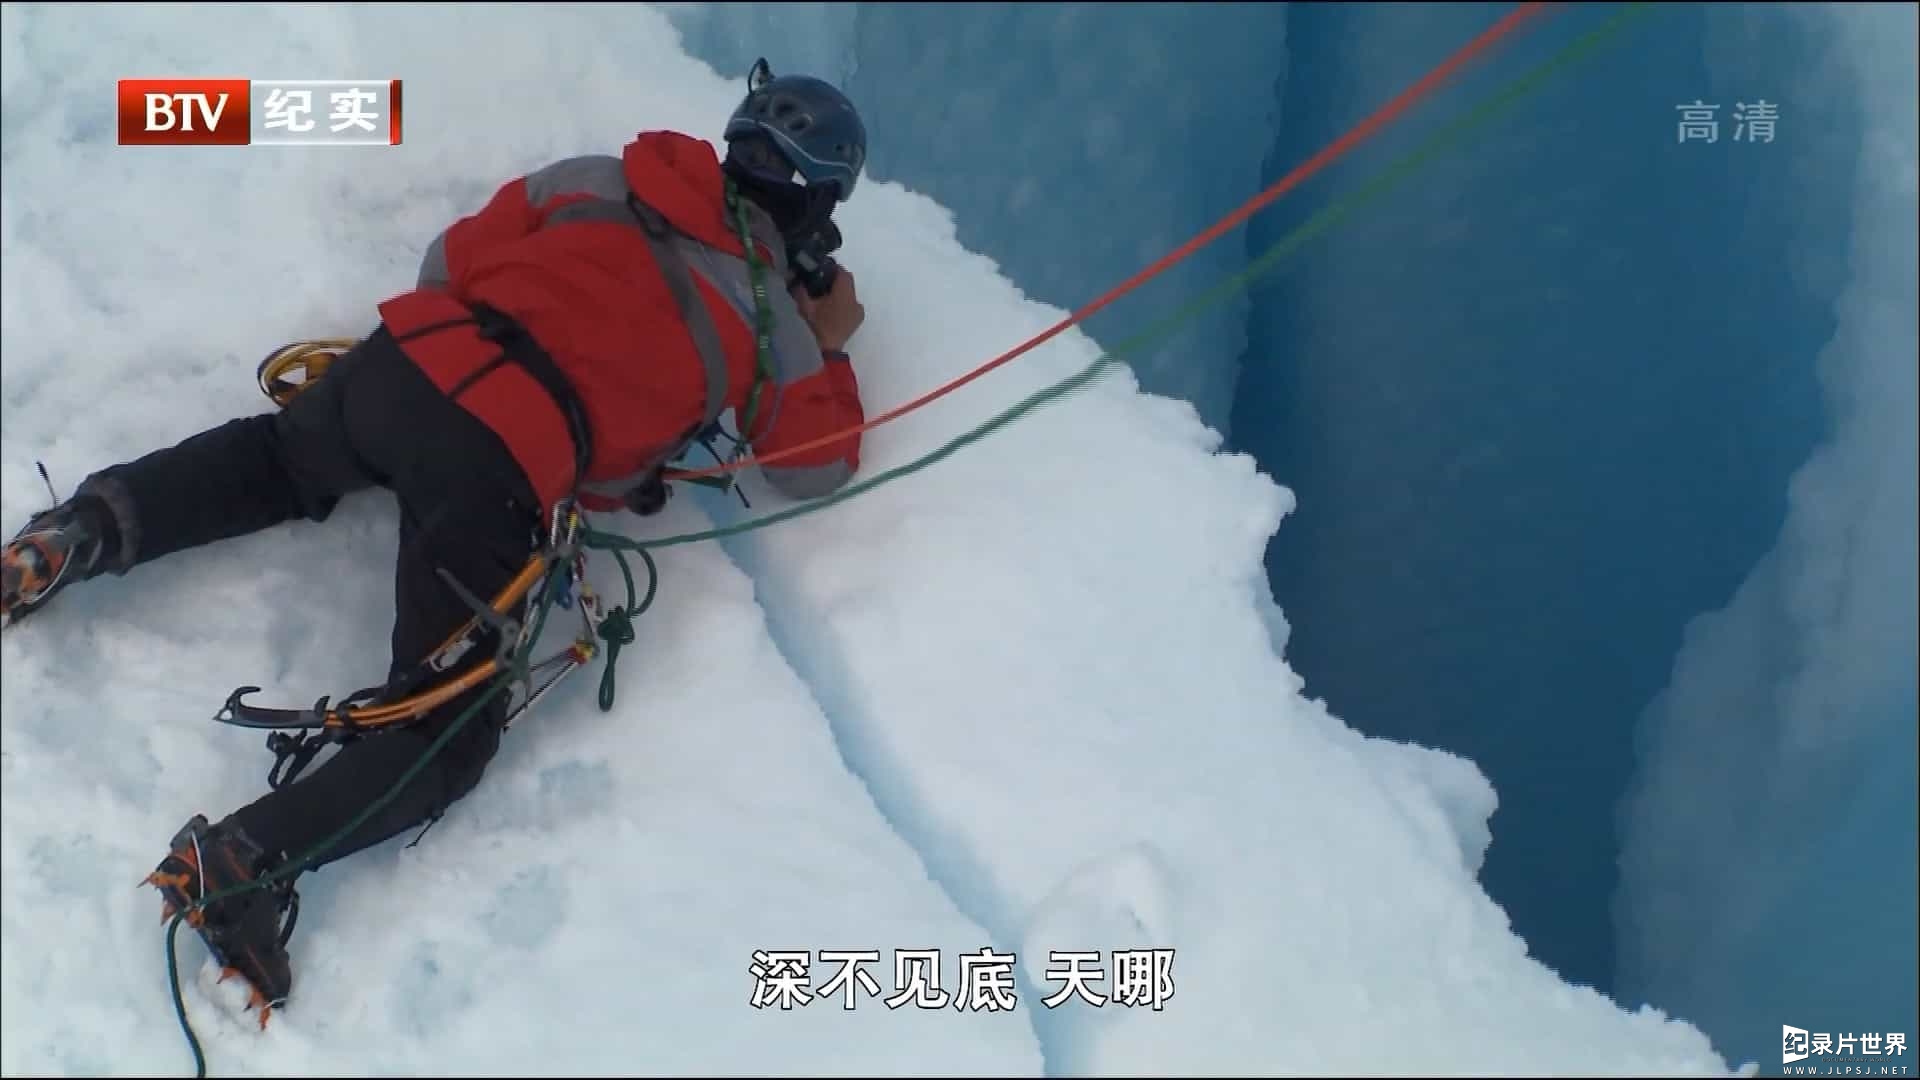 国家地理《逐冰之旅/寻找冰川 Chasing Ice 2012》全2集 